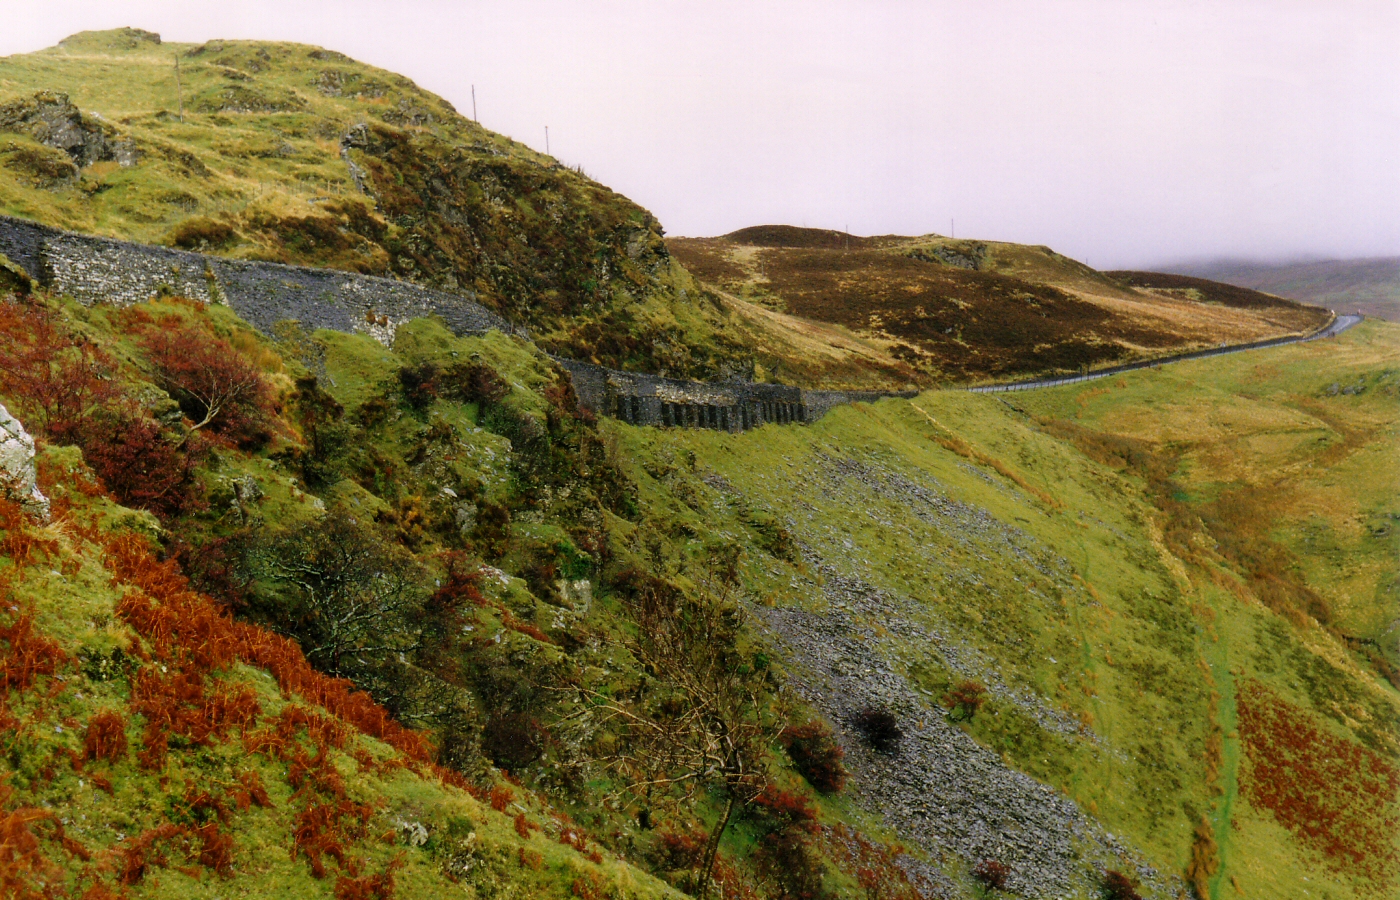 * Classic Cymru - B4391 Ffestiniog road clings to the hillside near the Rhaeadr y Cwm viewpoint - 1990 (by AJW) *